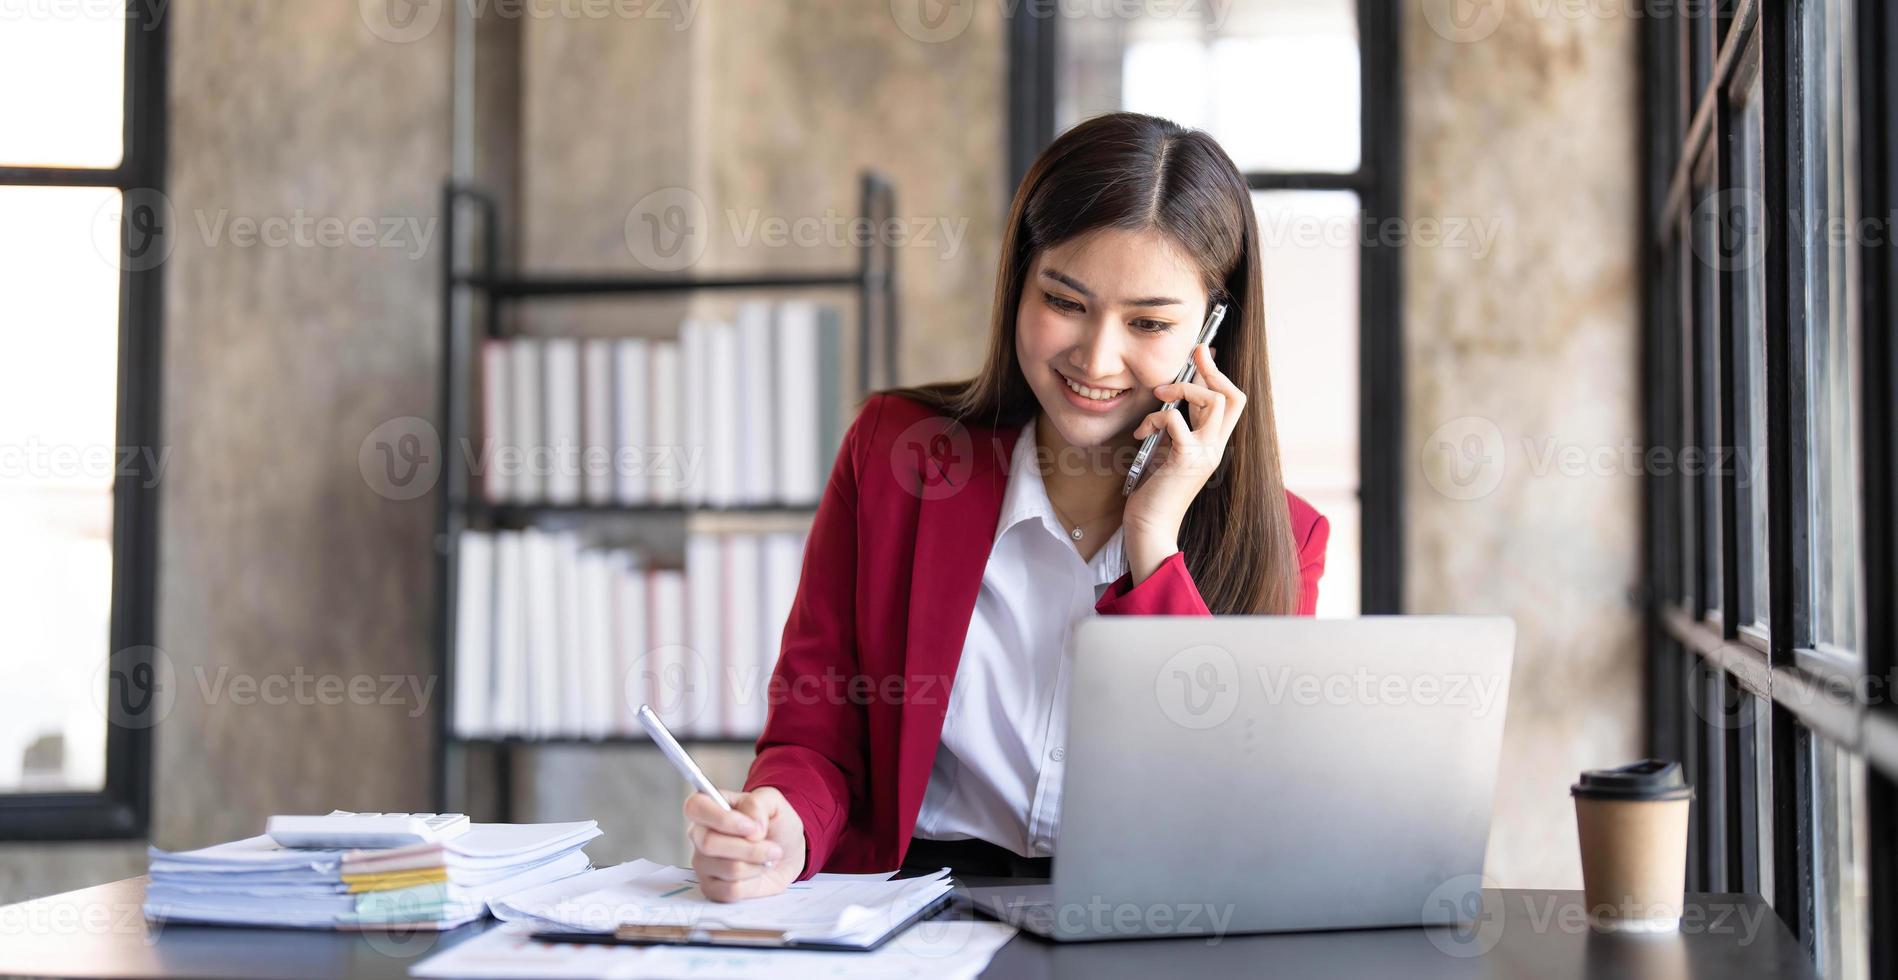 retrato de una joven y alegre mujer asiática de negocios que usa una aplicación de teléfono inteligente en la oficina del lugar de trabajo, concepto de empleado de una pequeña empresa independiente en línea de mercadeo en línea de telemercadeo de comercio electrónico. foto